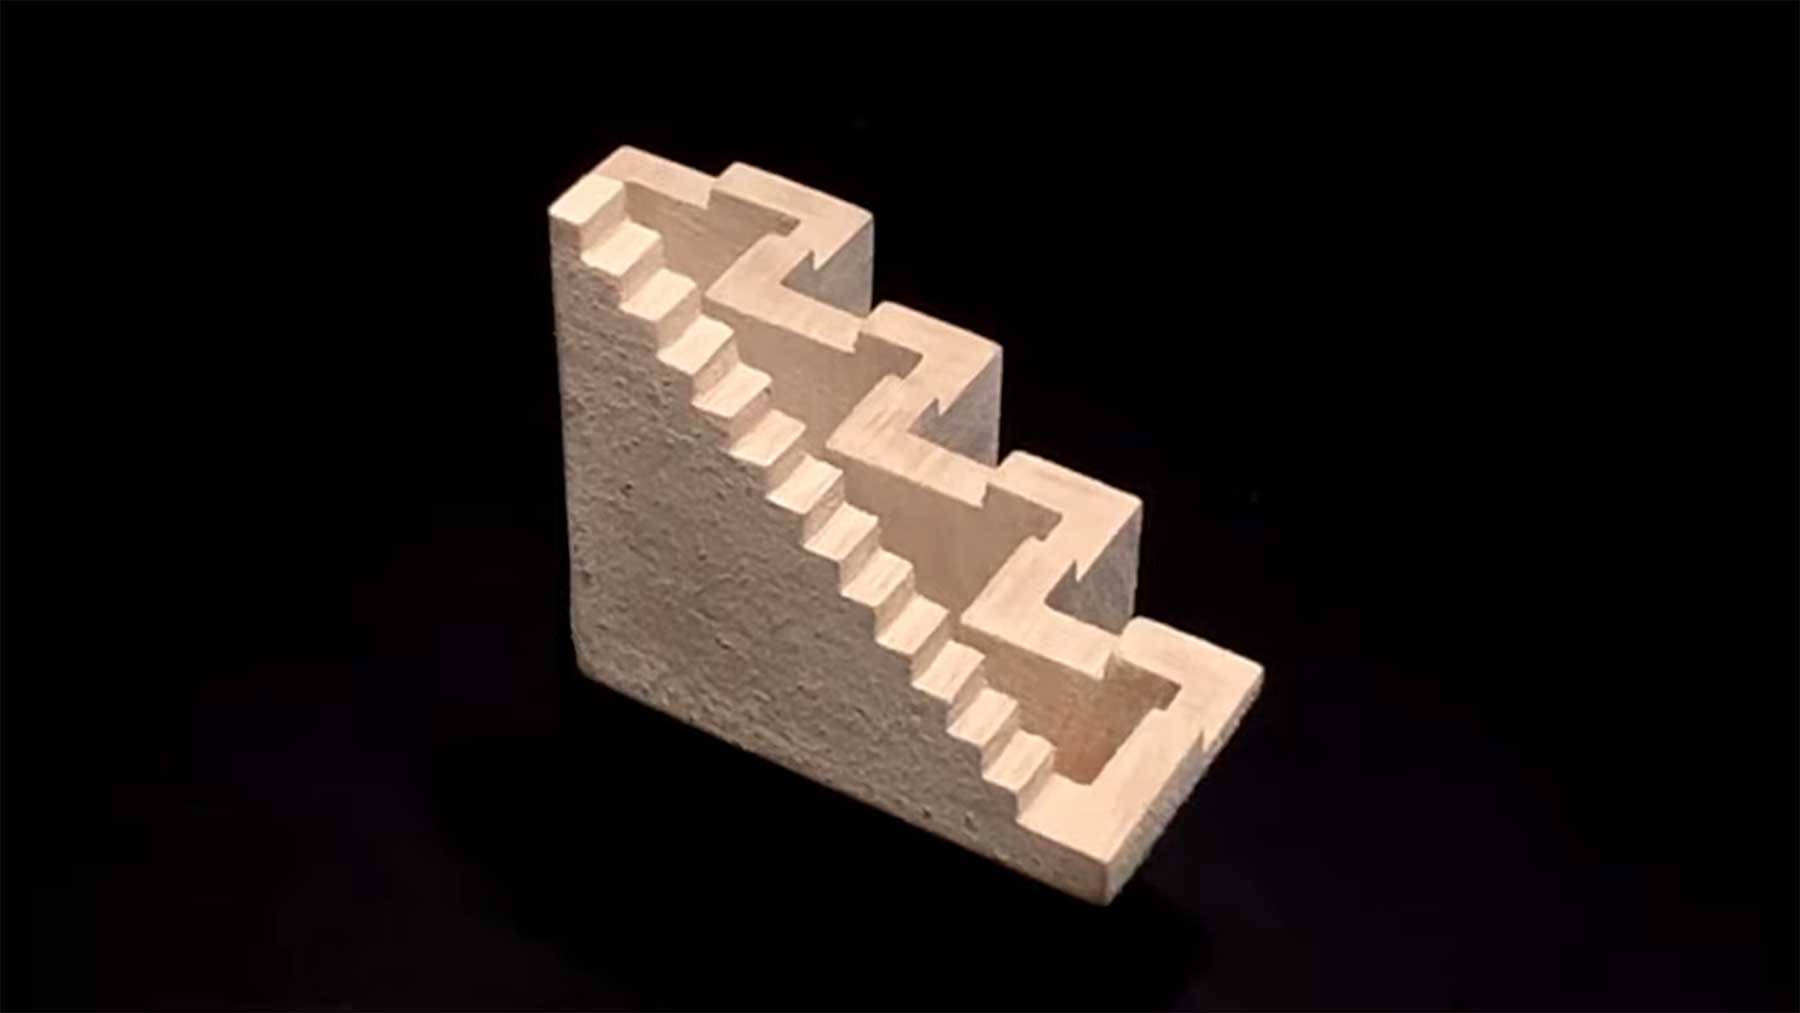 5 unmögliche Holz-Figuren unmoegle-bauten-optische-illusionen-aus-holz 